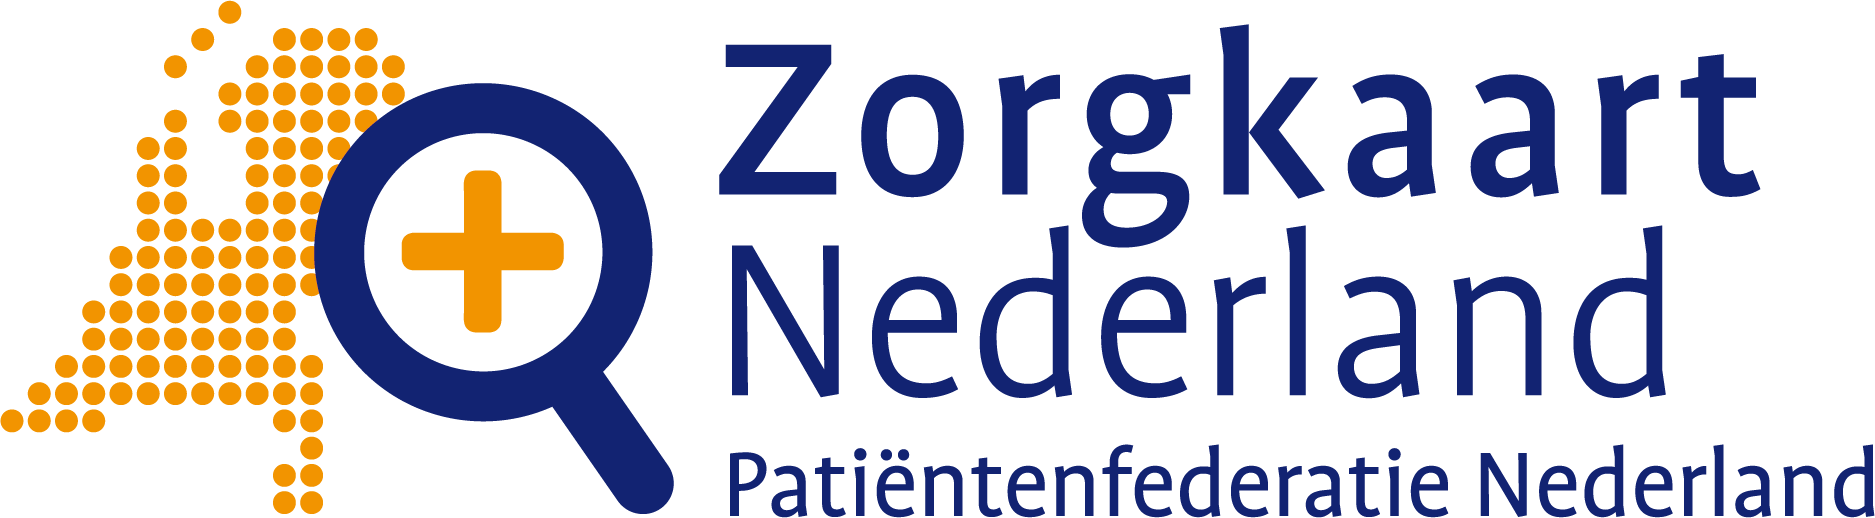 Zorgkaart Nederland logo